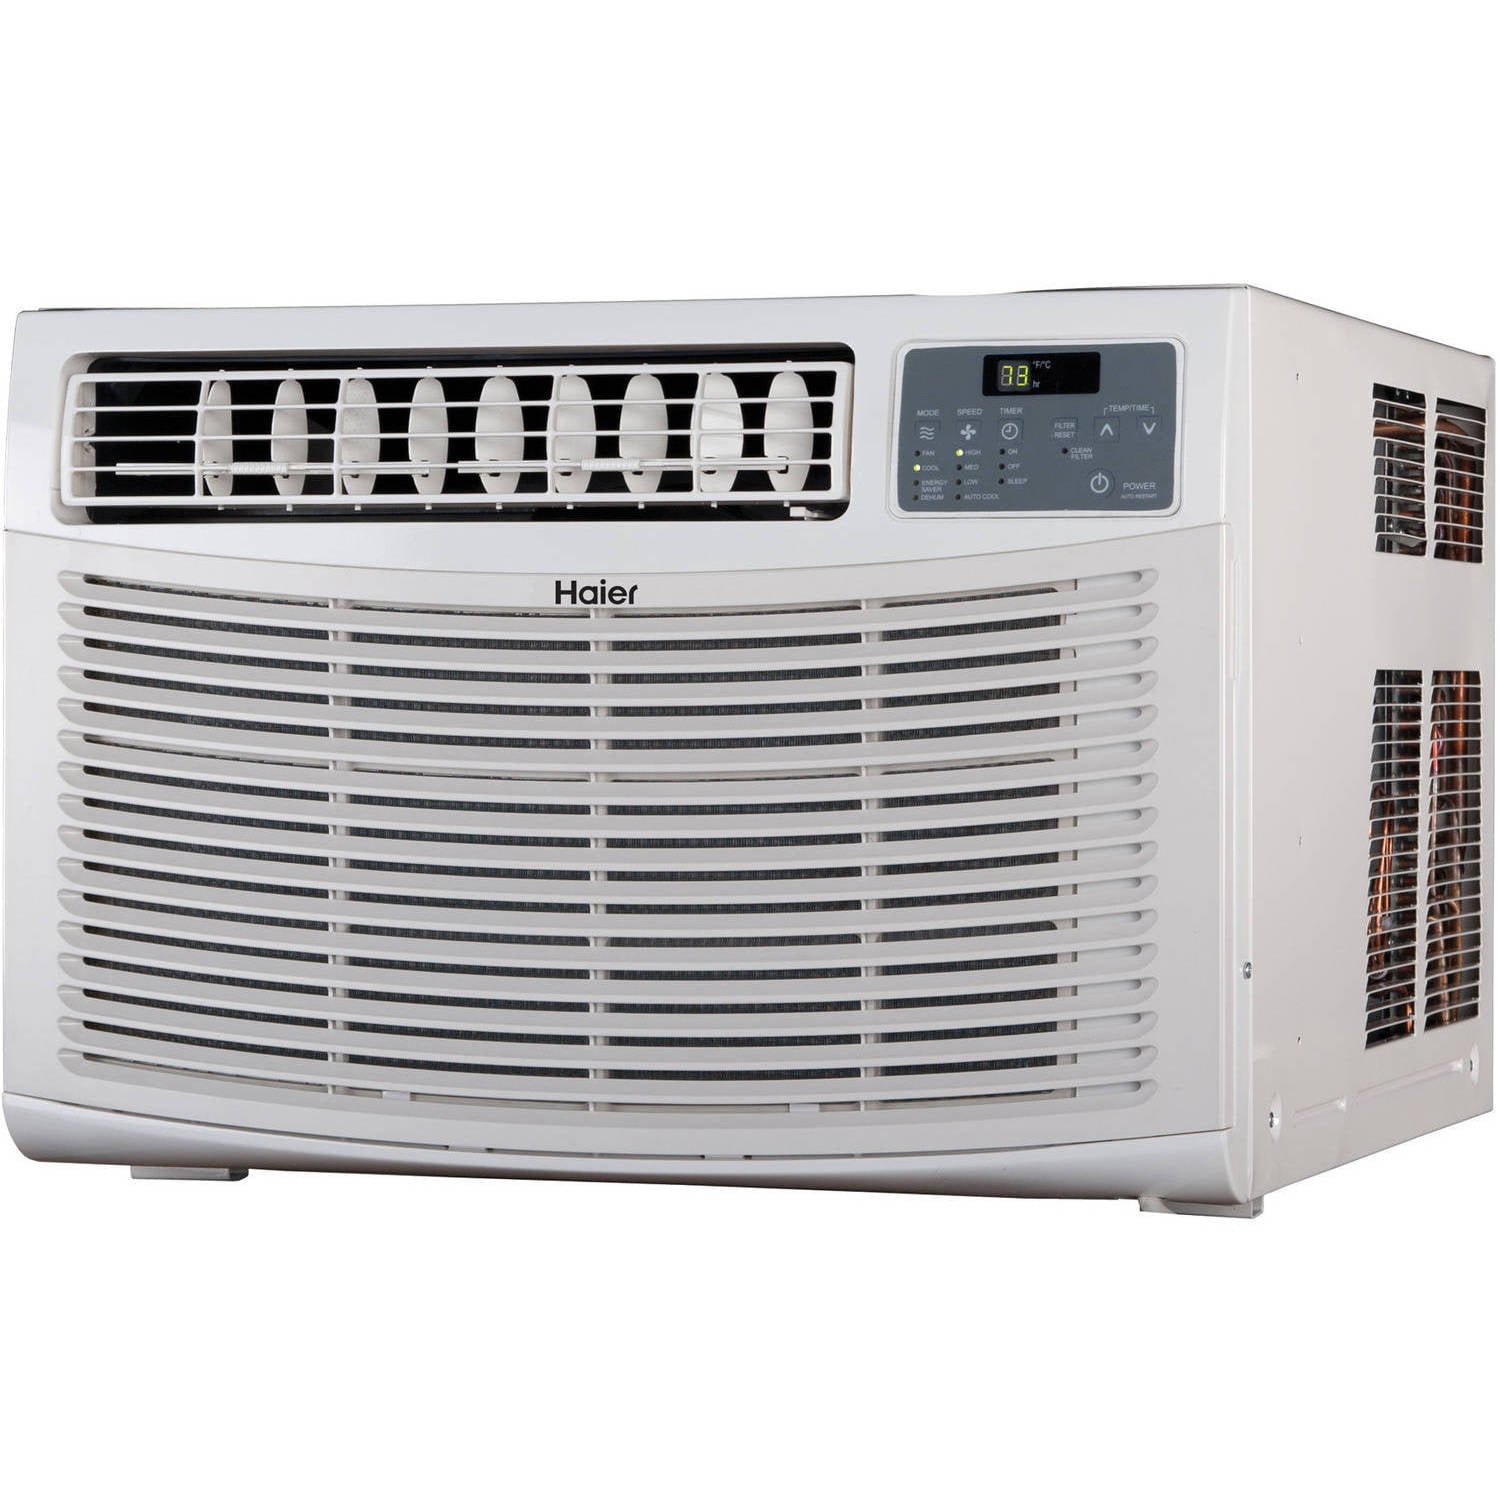 digital air conditioner